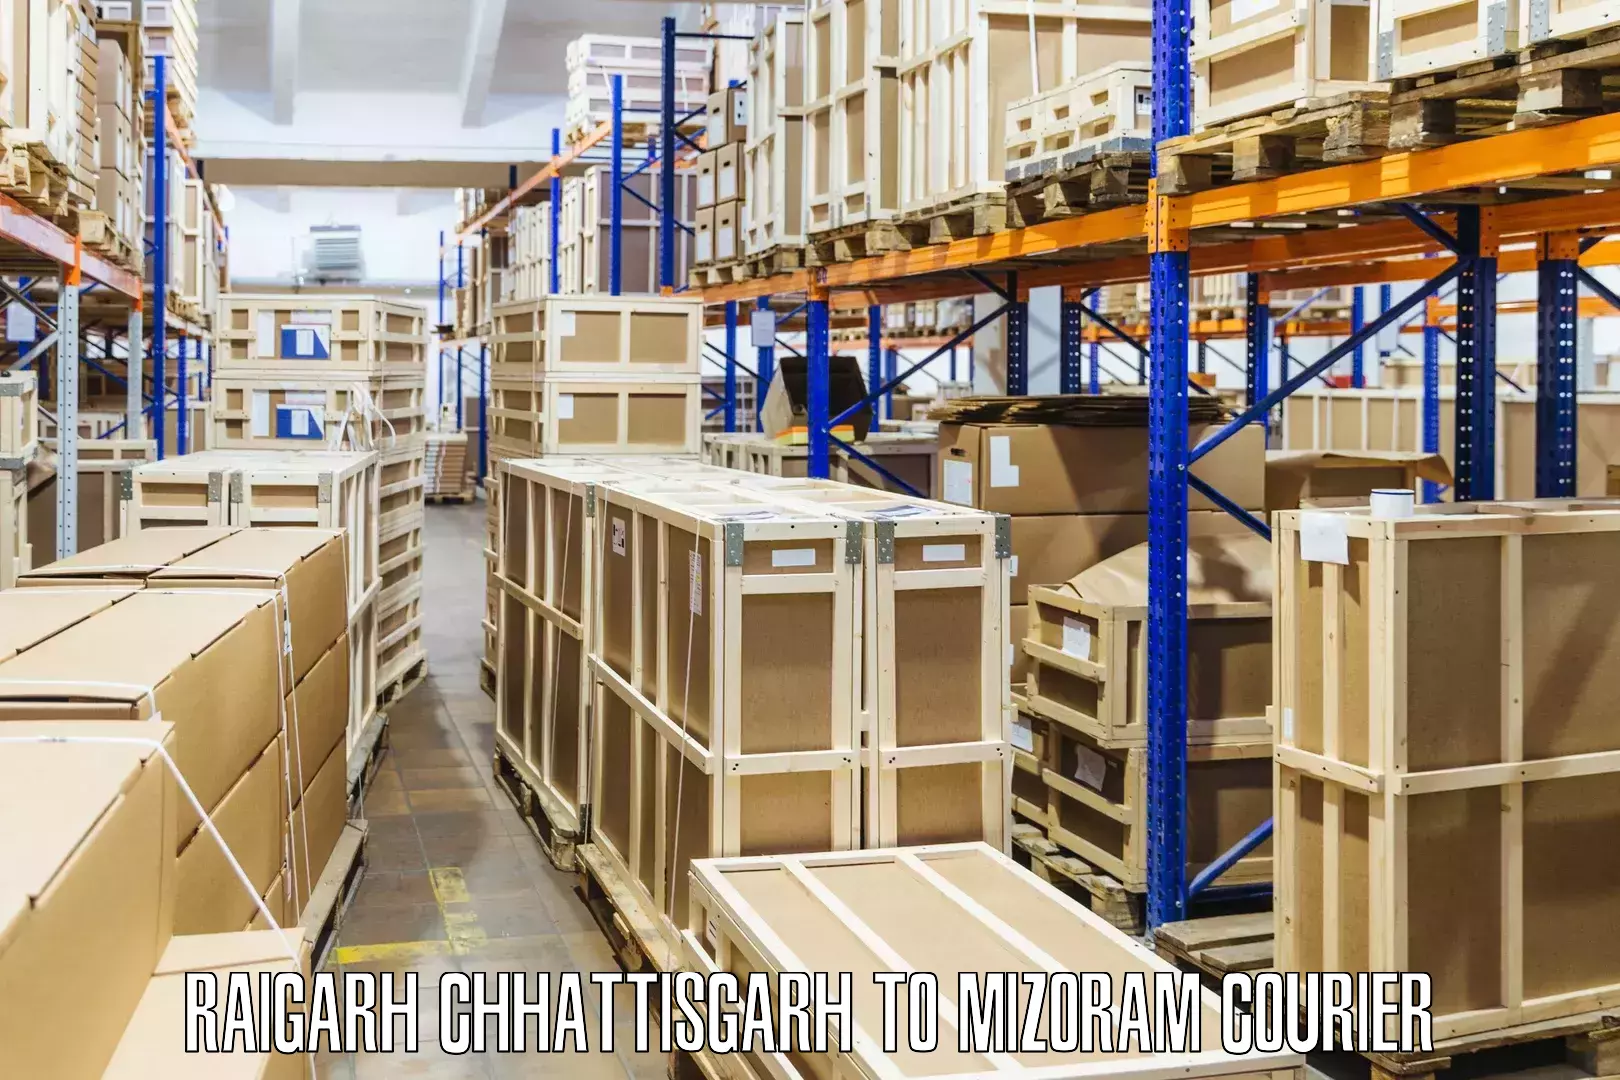 Affordable parcel service Raigarh Chhattisgarh to Siaha